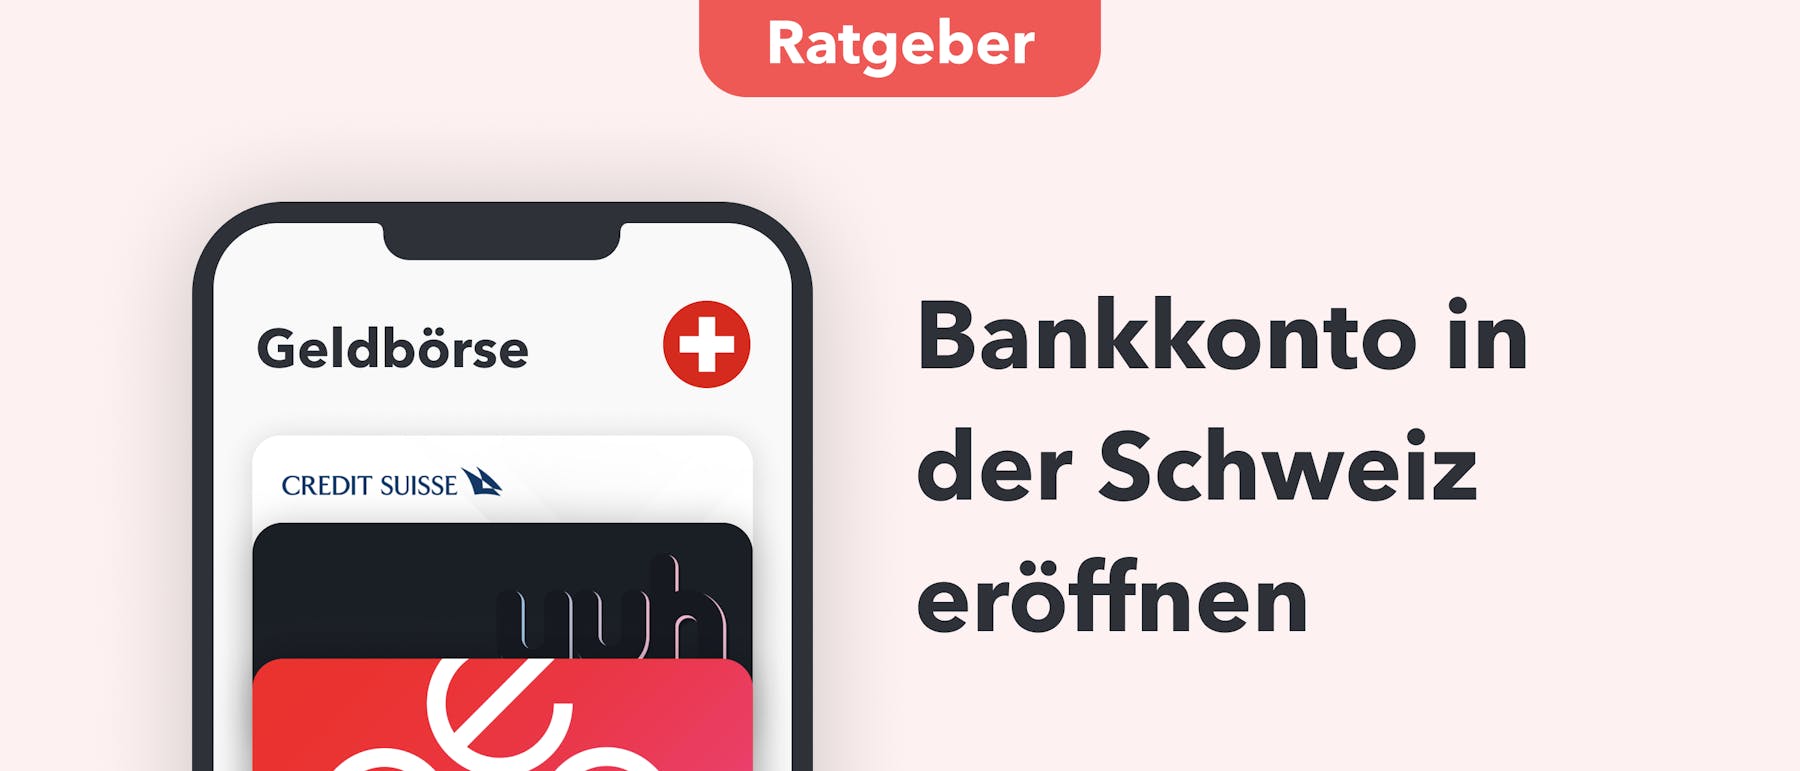 Bankkonto in der Schweiz eröffnen